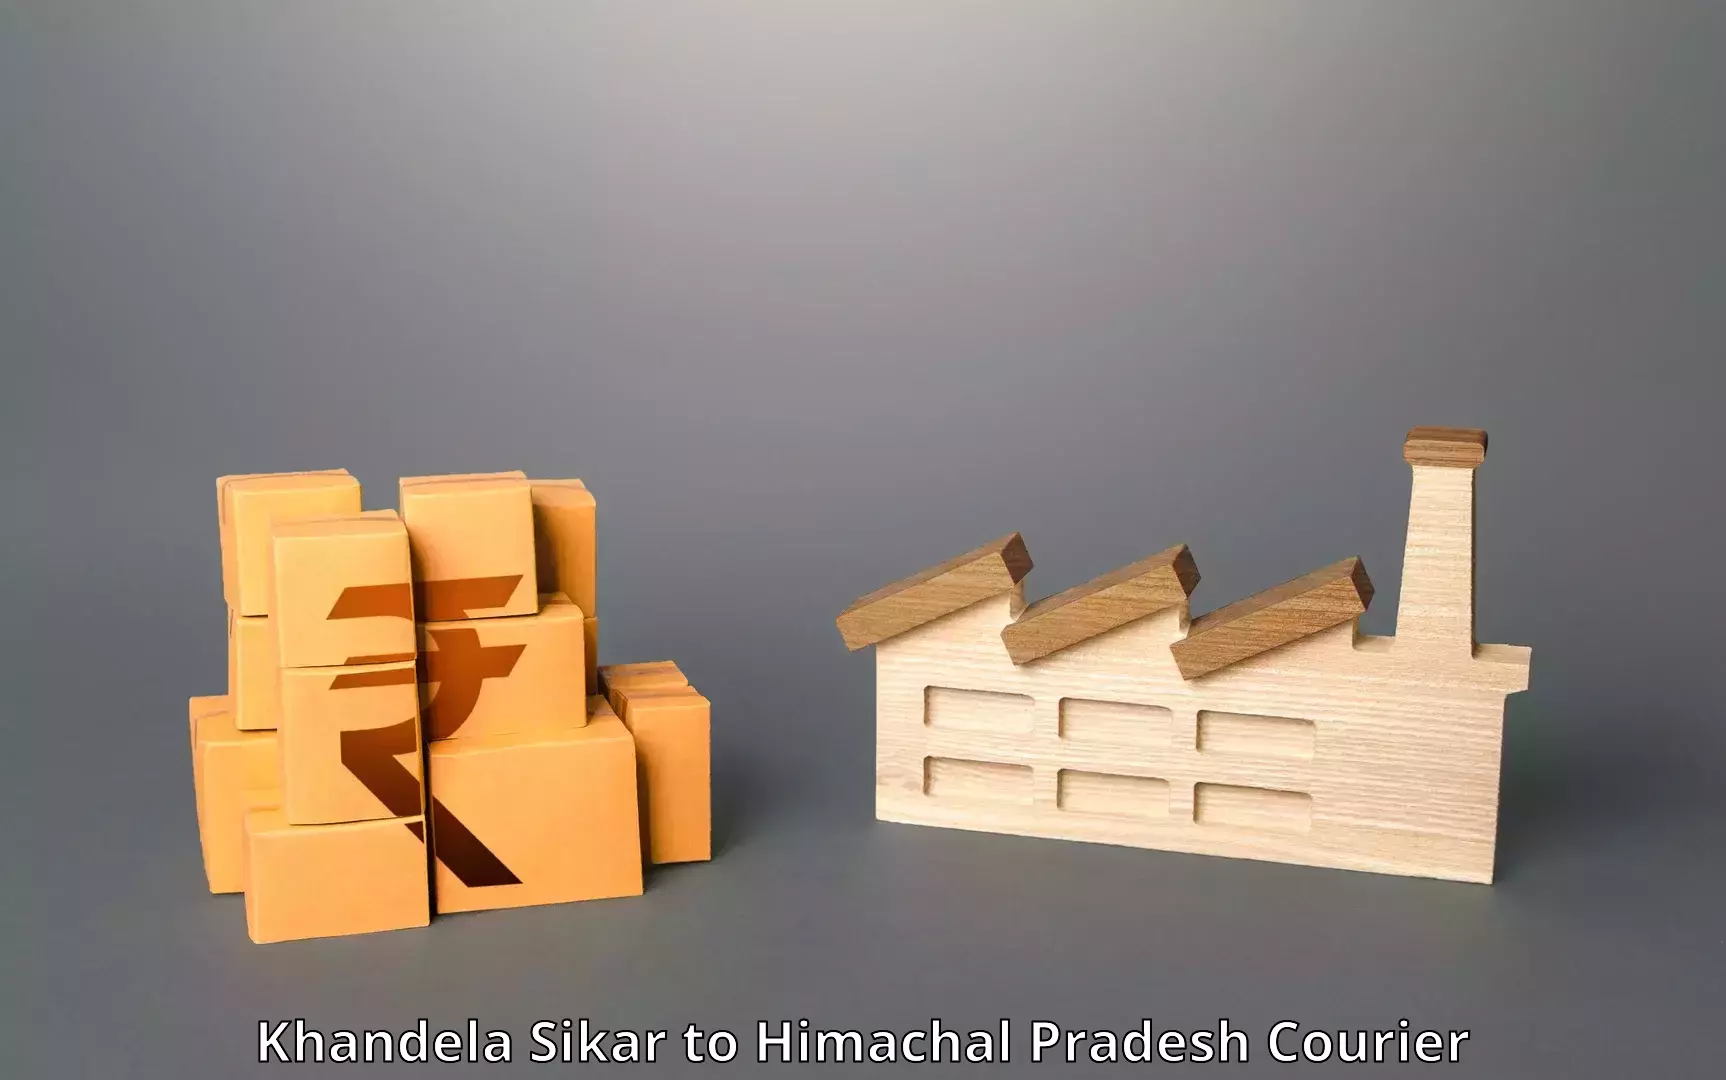 Efficient order fulfillment Khandela Sikar to Dharamshala